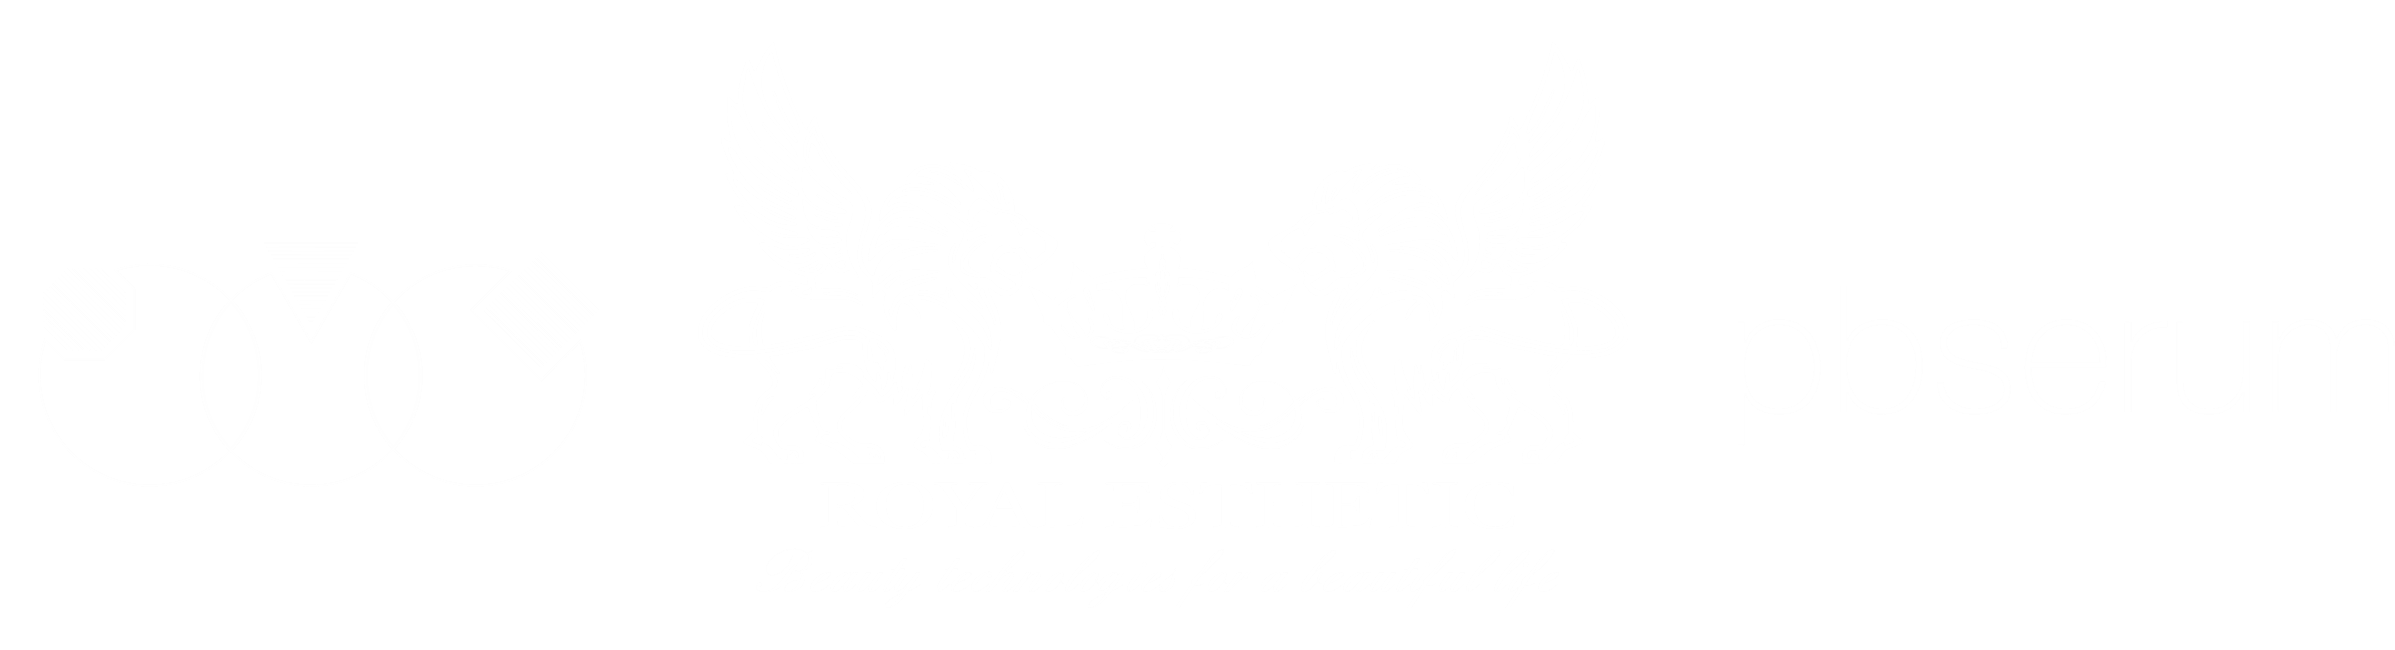 Royal Esthetic